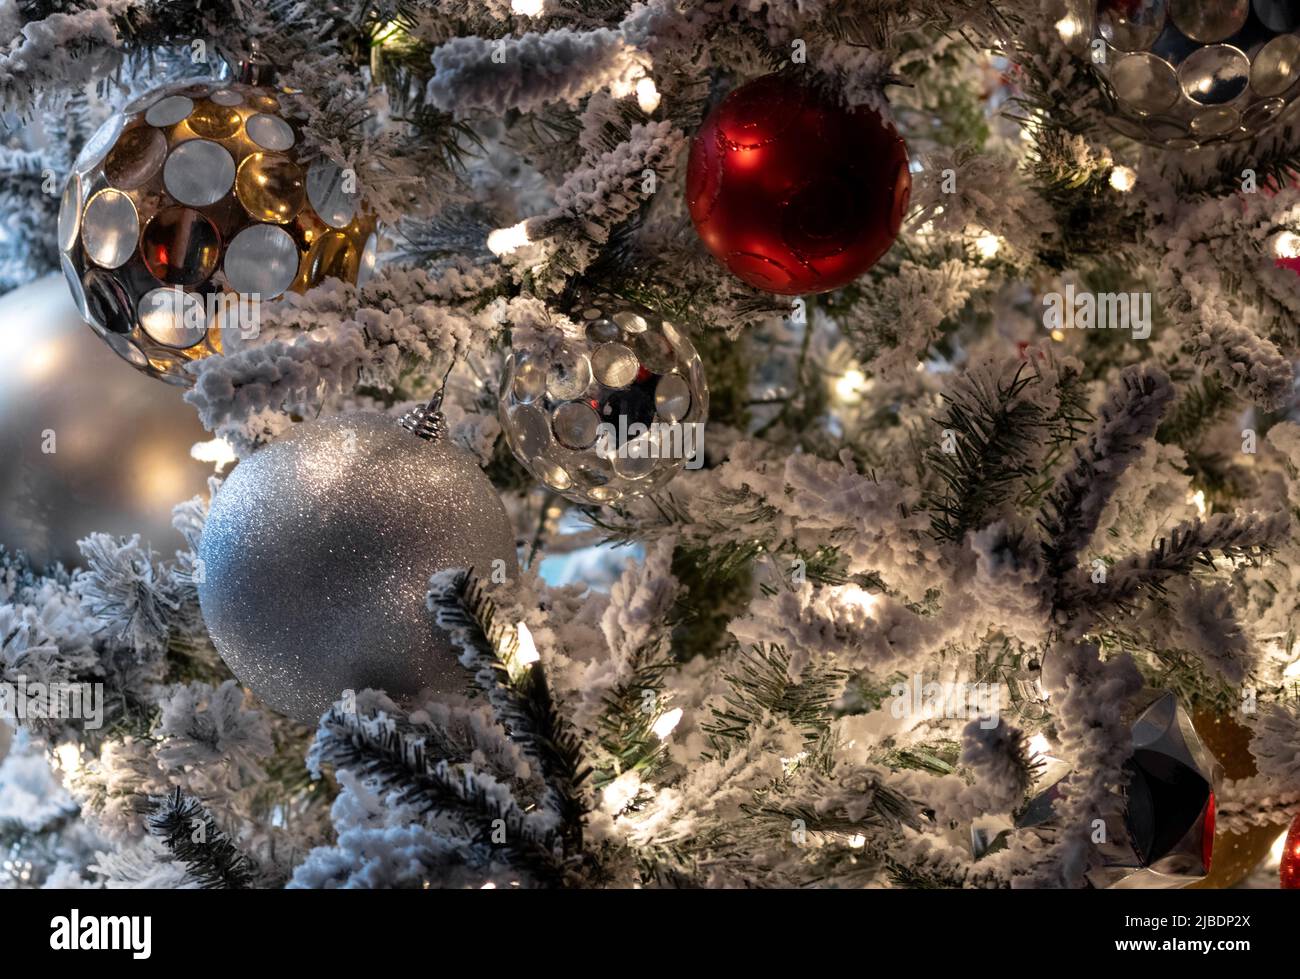 gros plan sur la décoration de noël, lumières blanches sur un arbre recouvert de neige avec des boules de noël rouges et blanches, argentées et dorées, scène de vacances festives Banque D'Images